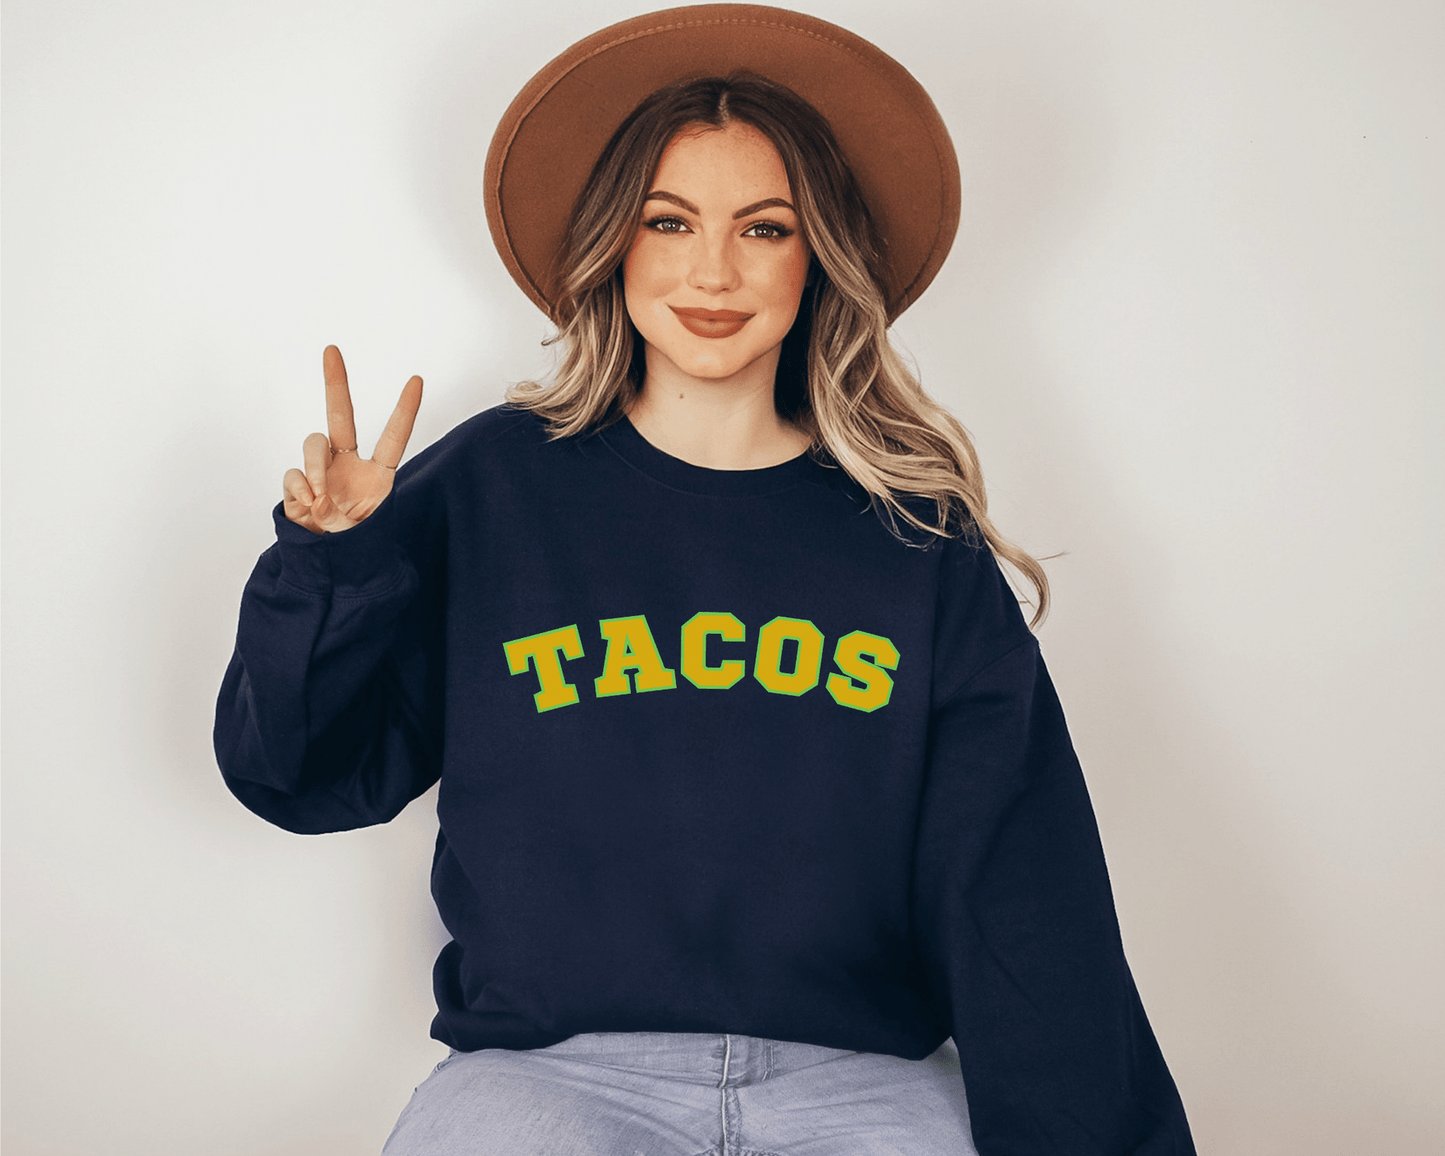 Tacos Sweatshirt in Navy